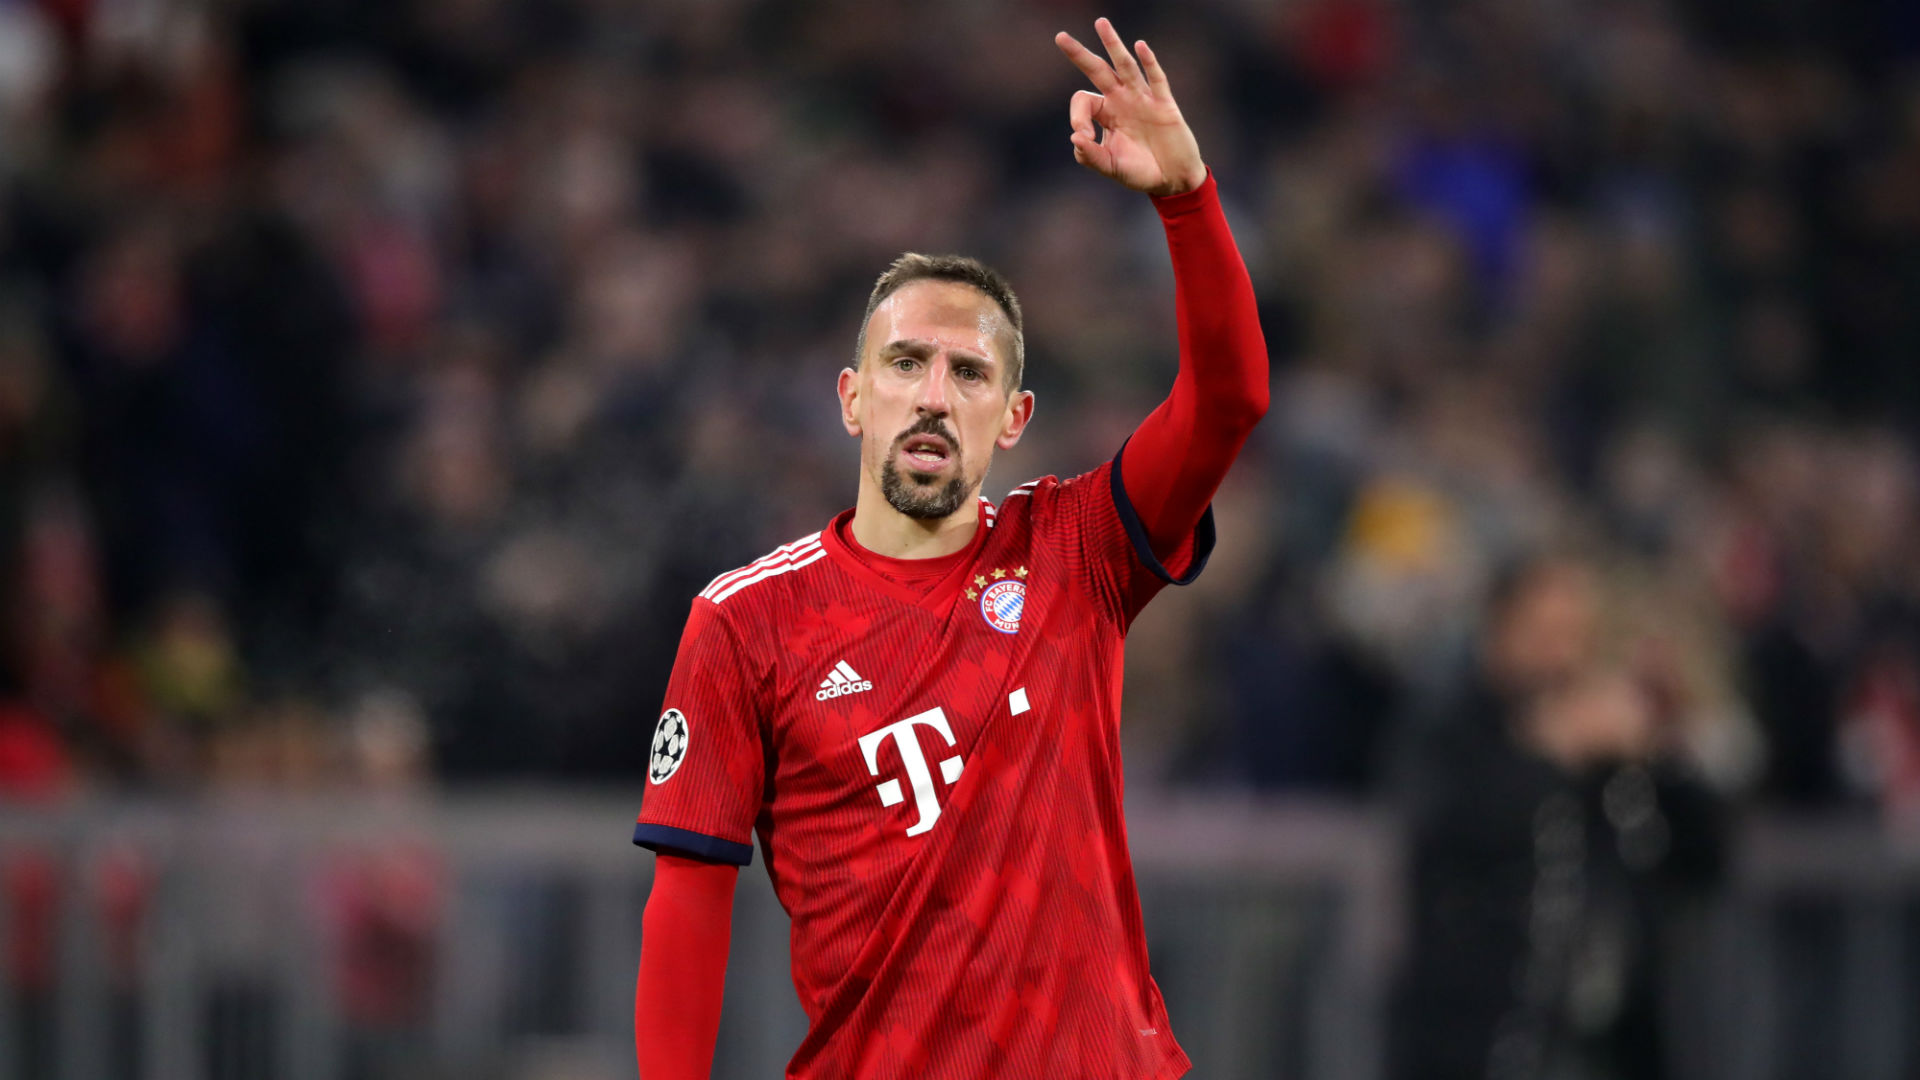 Bayern Munich xác nhận Franck Ribery sẽ ra đi | được trong thể thao